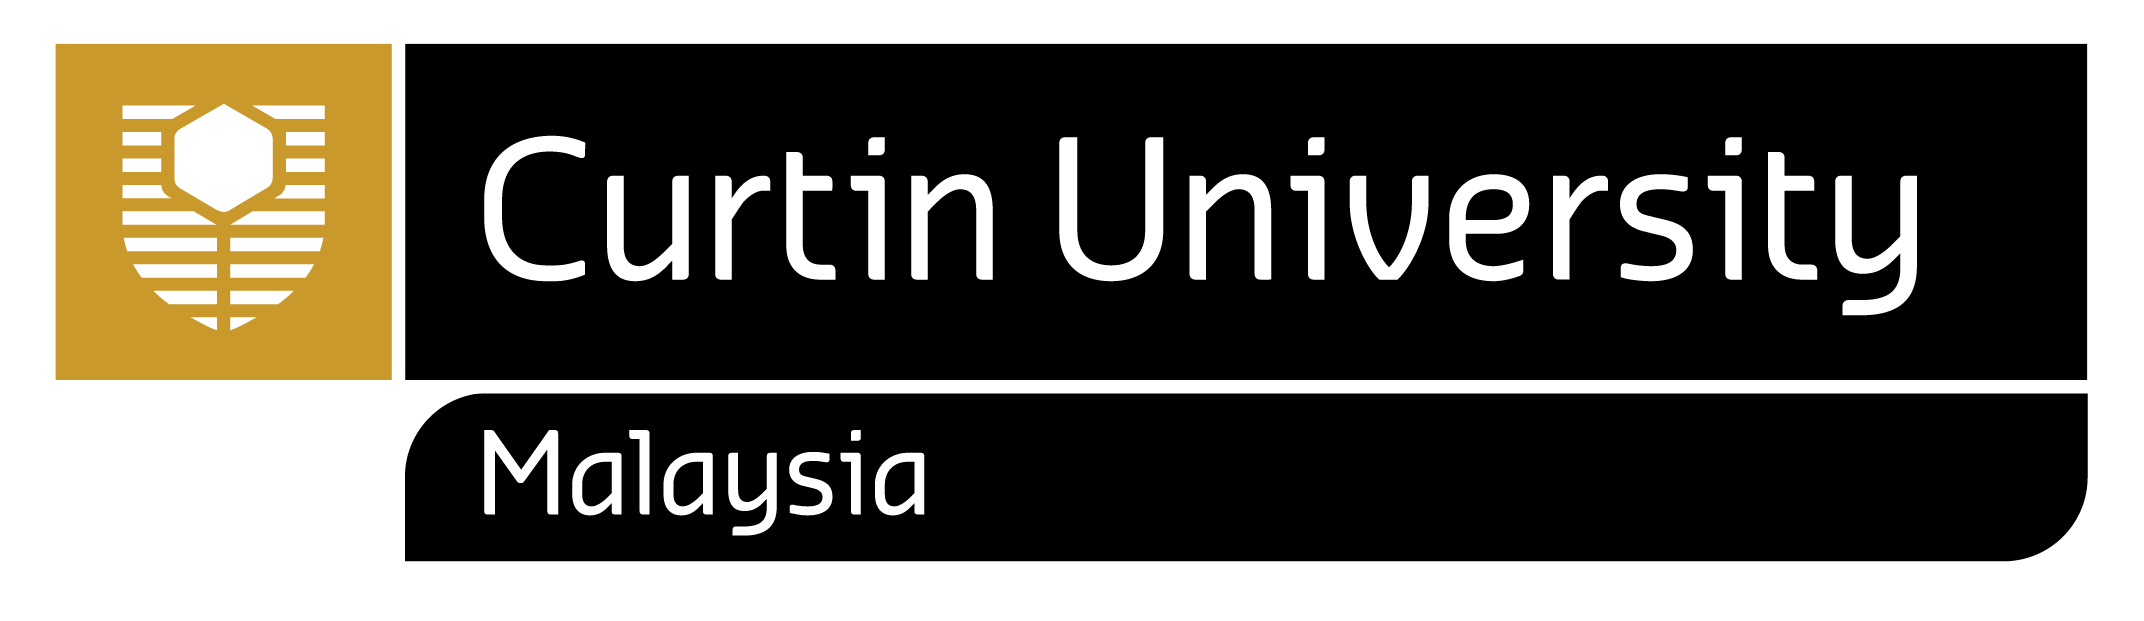 Curtin Malaysia logo